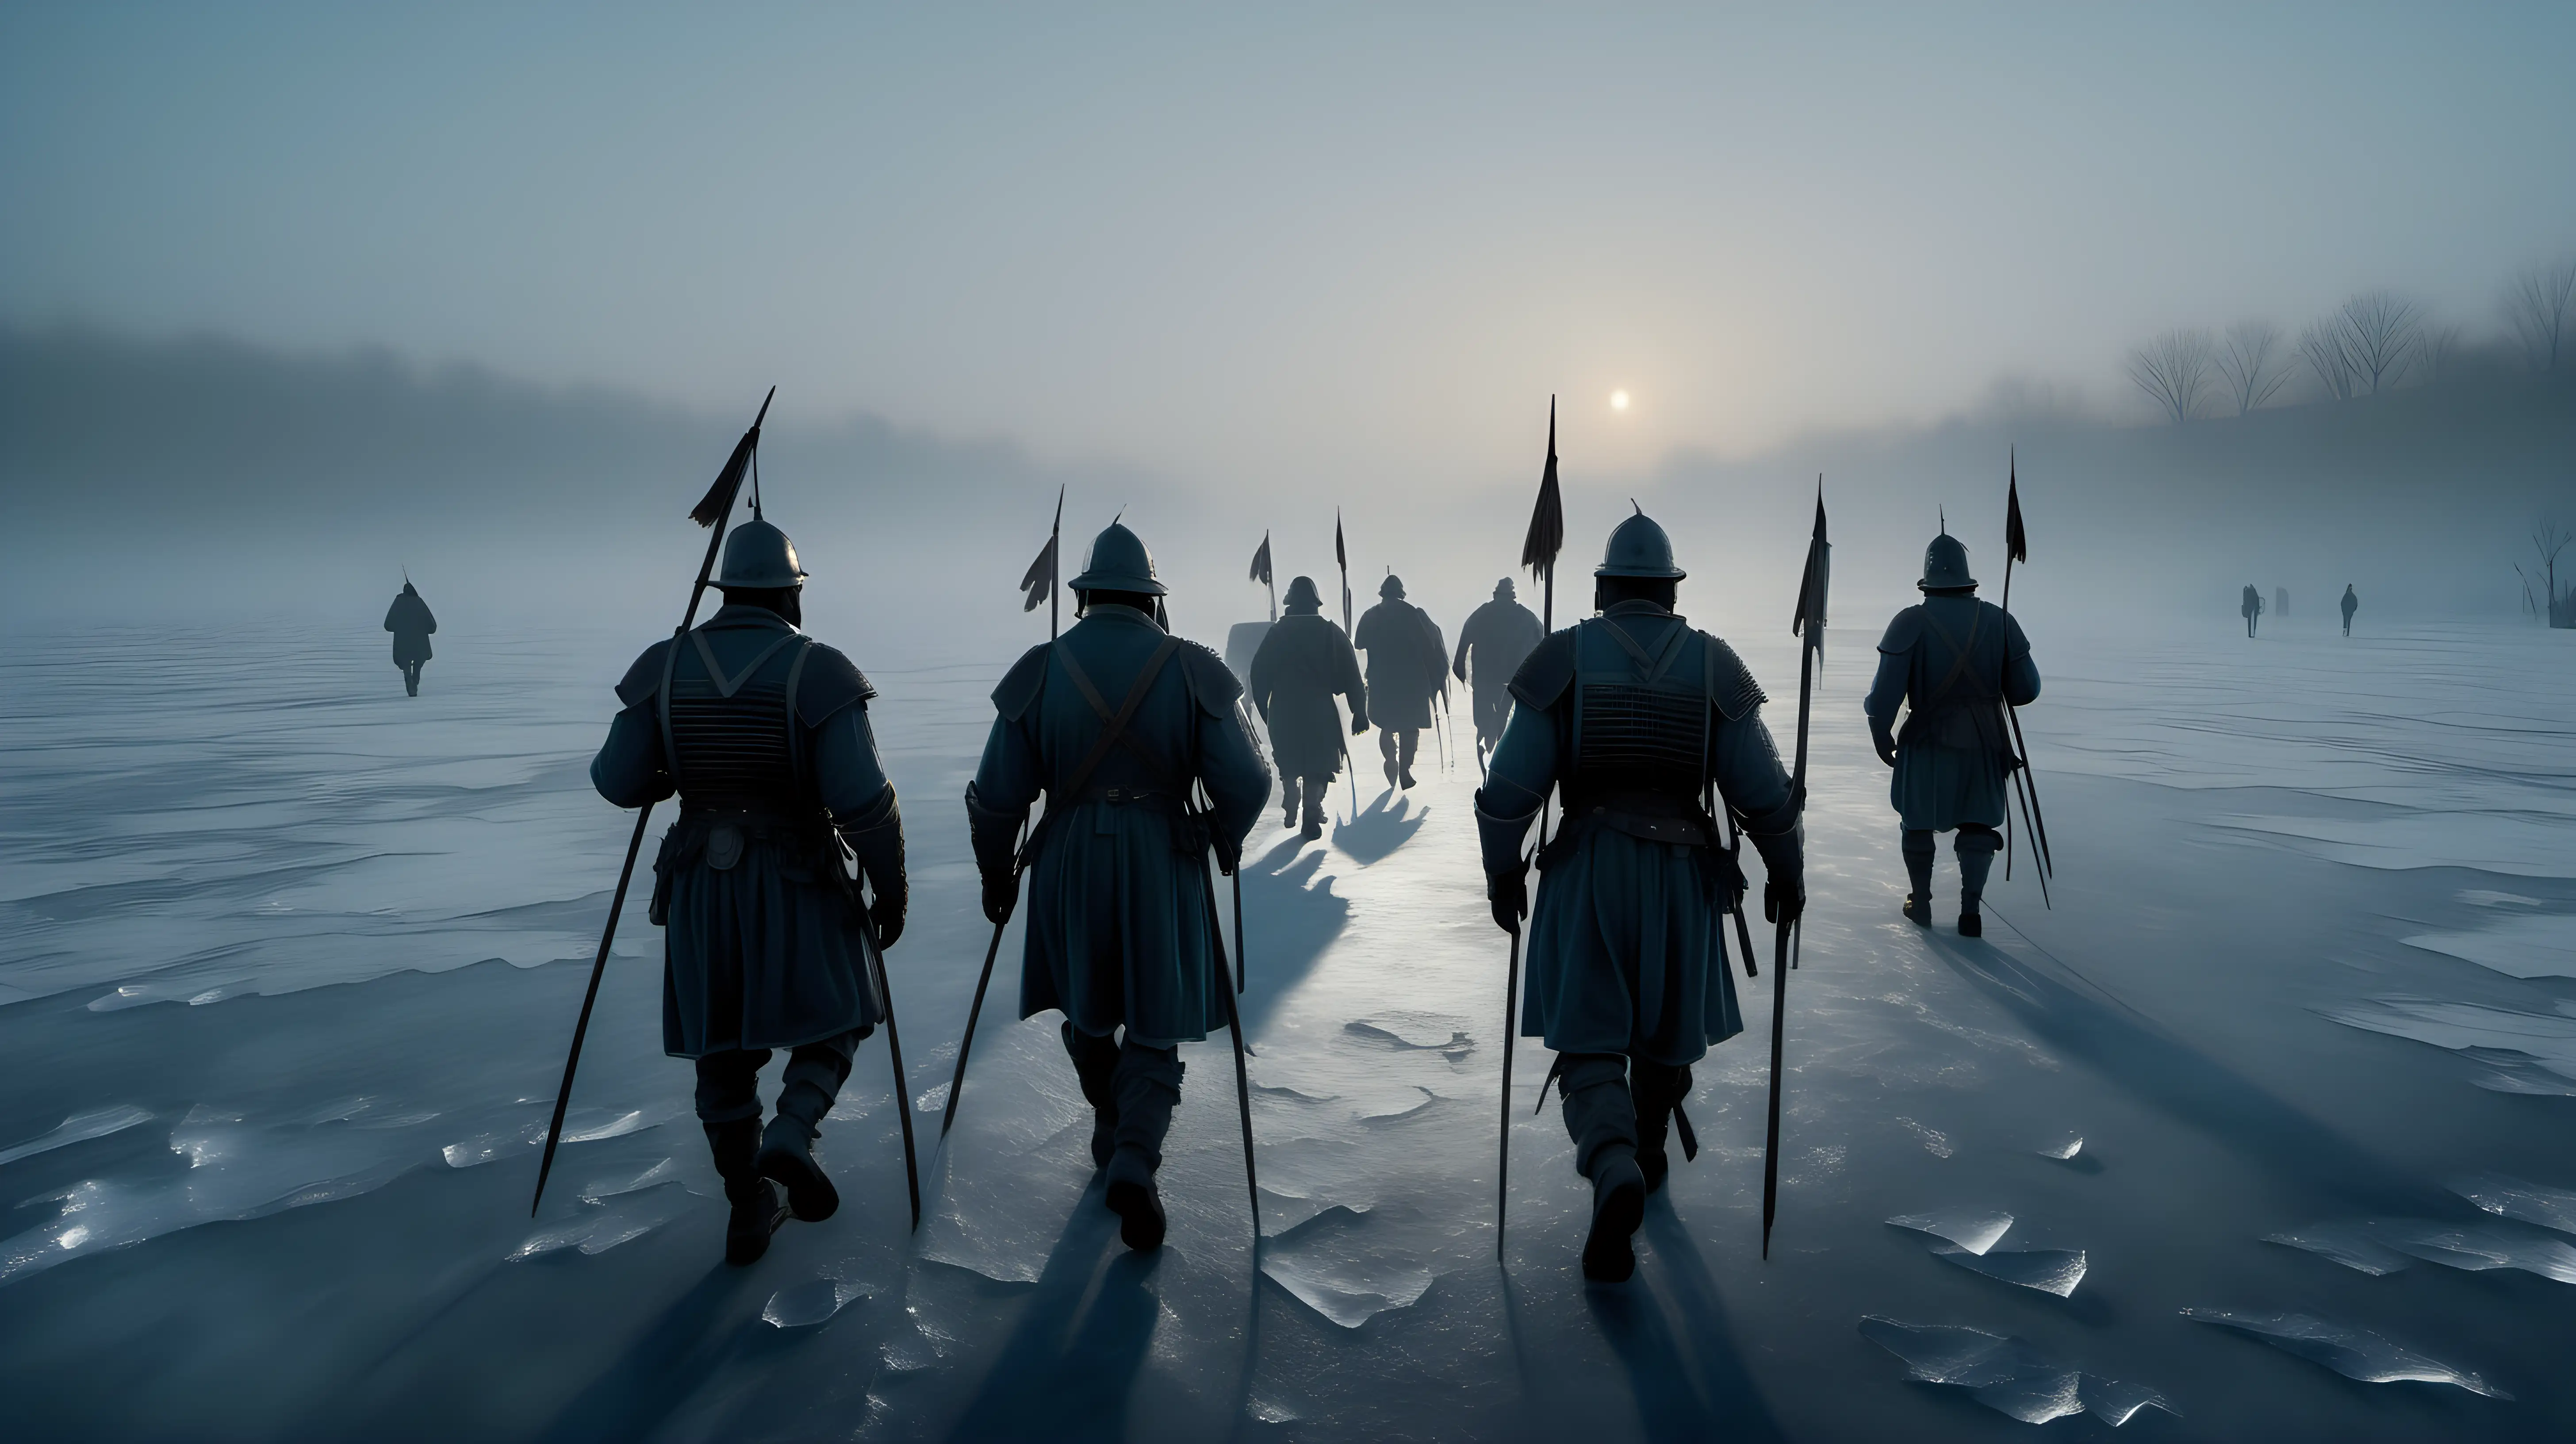 Soldados de los tercios , caminando por el hielo al alba, niebla, imagen ultra realista,alta definición iluminación cinemática, siglo XVI,8K